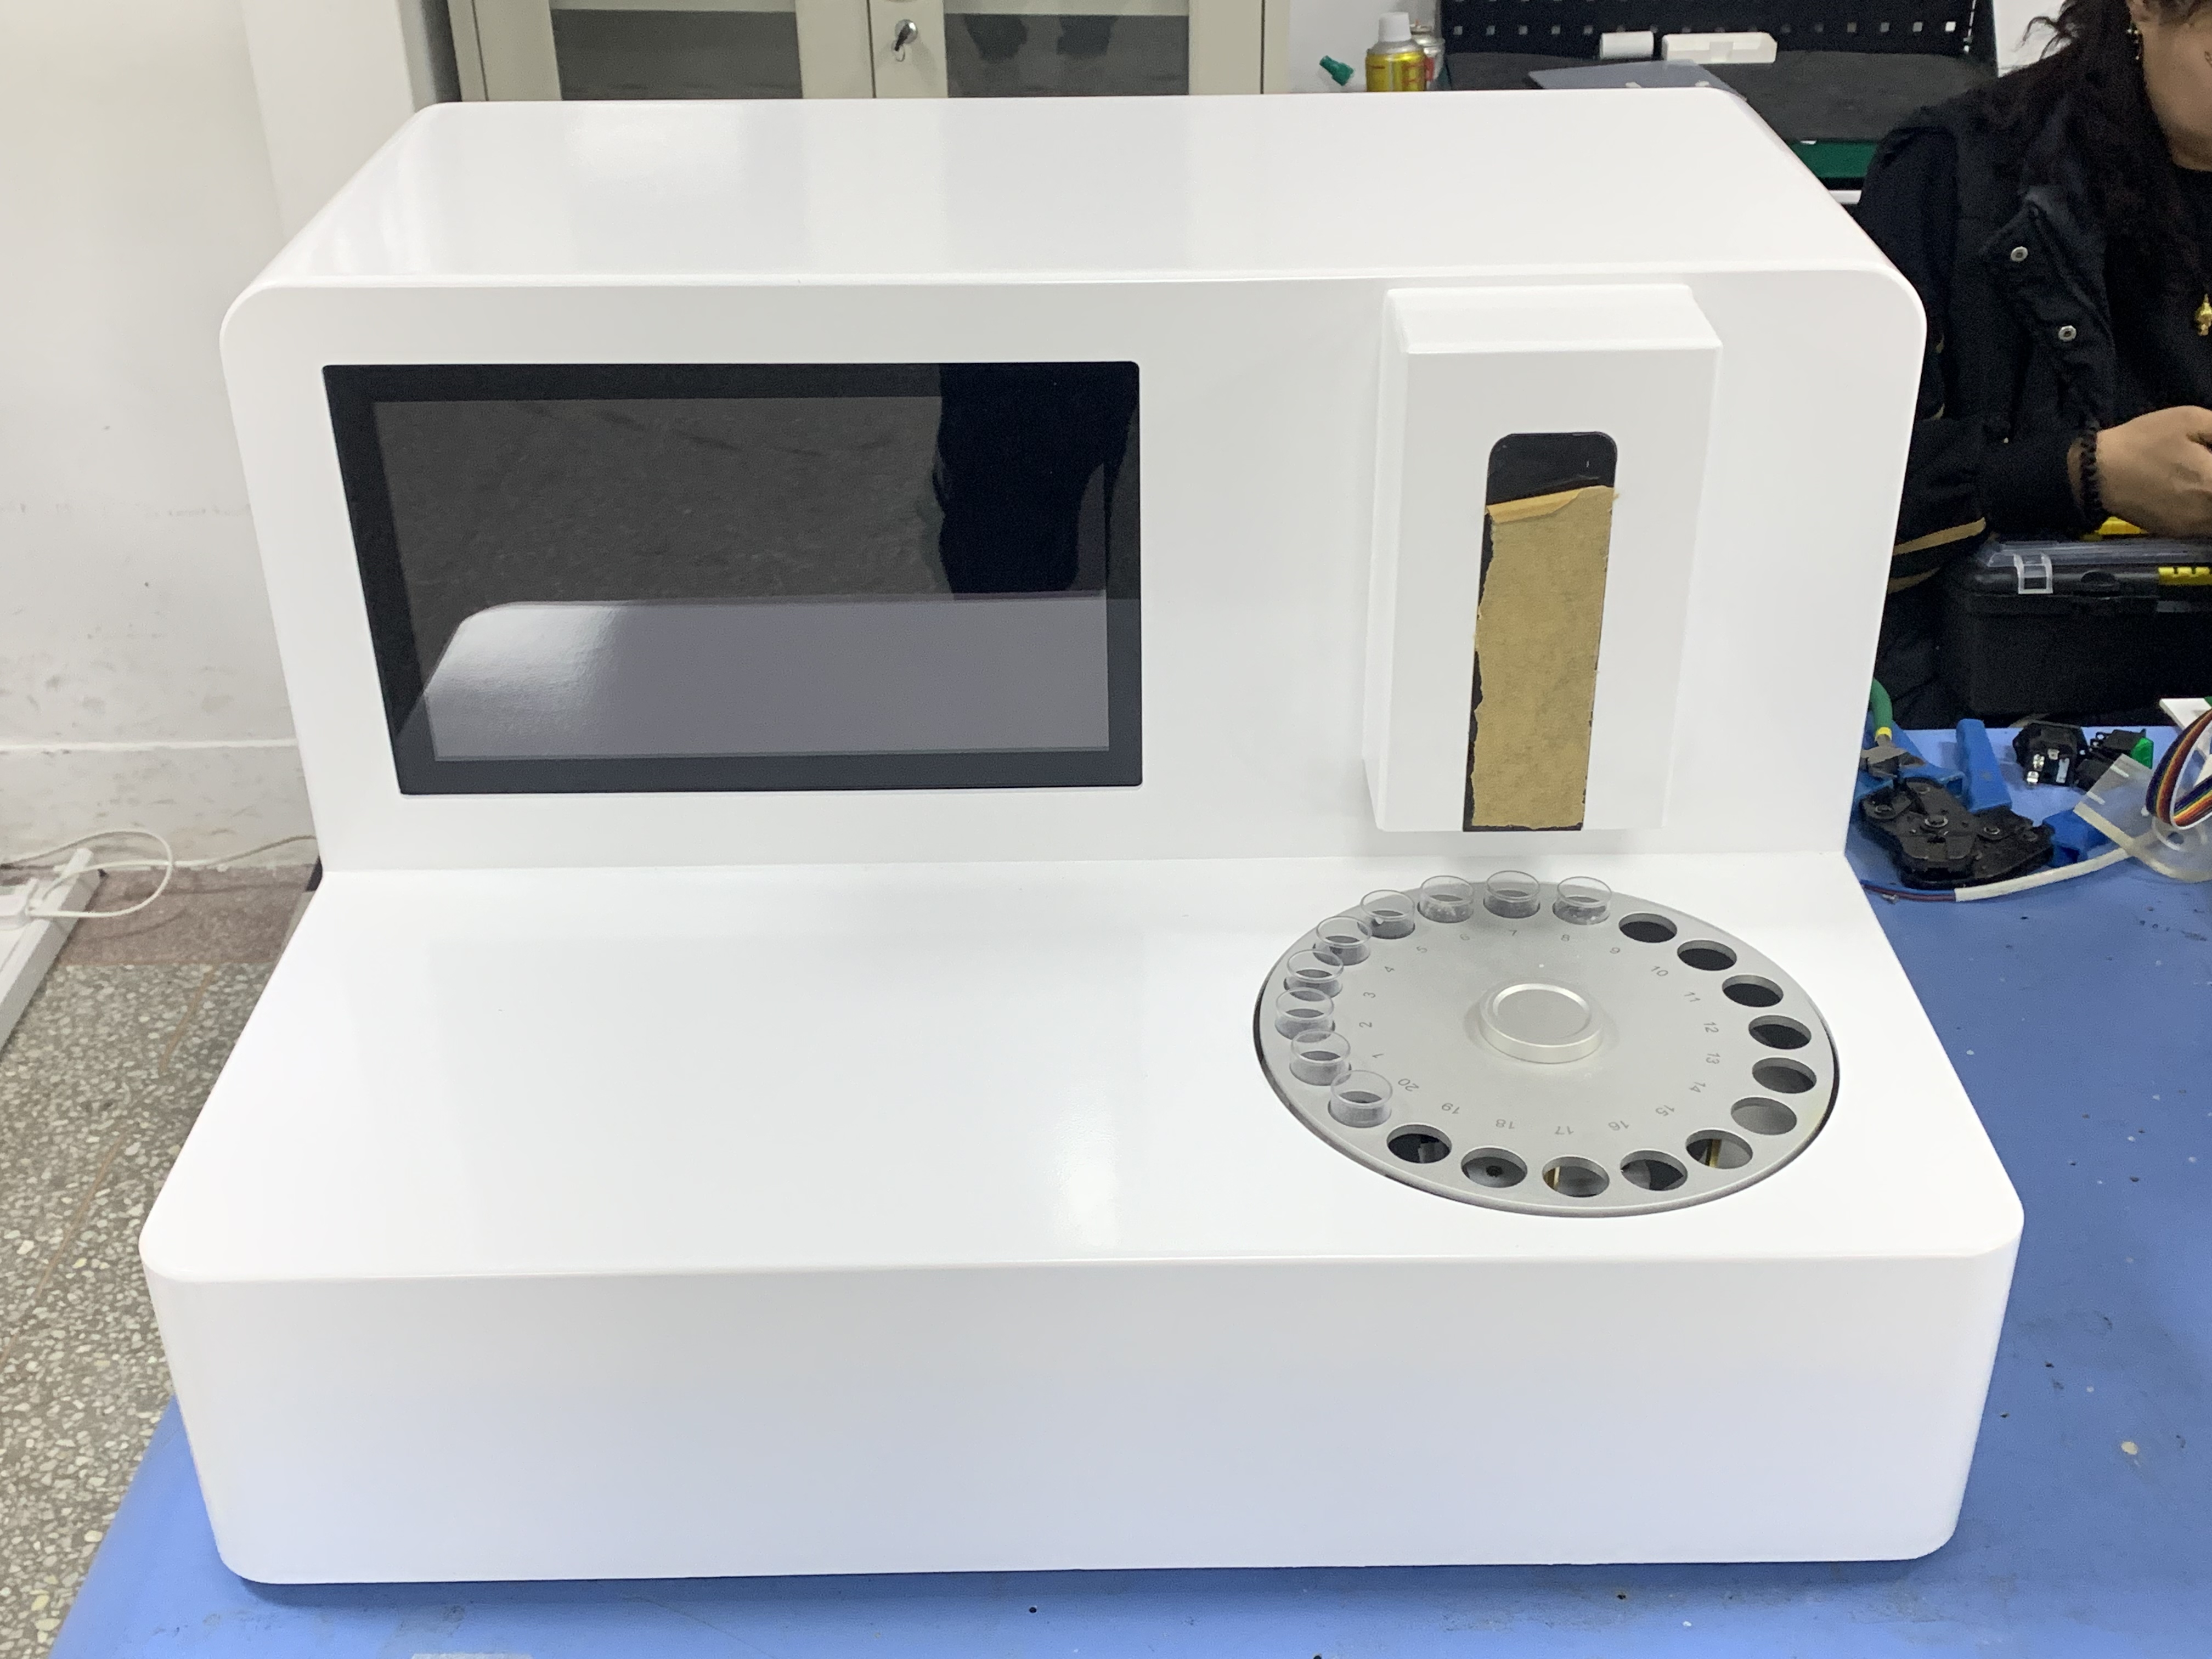 GK-9000A全自动母乳分析仪器的操作步骤是什么样的？